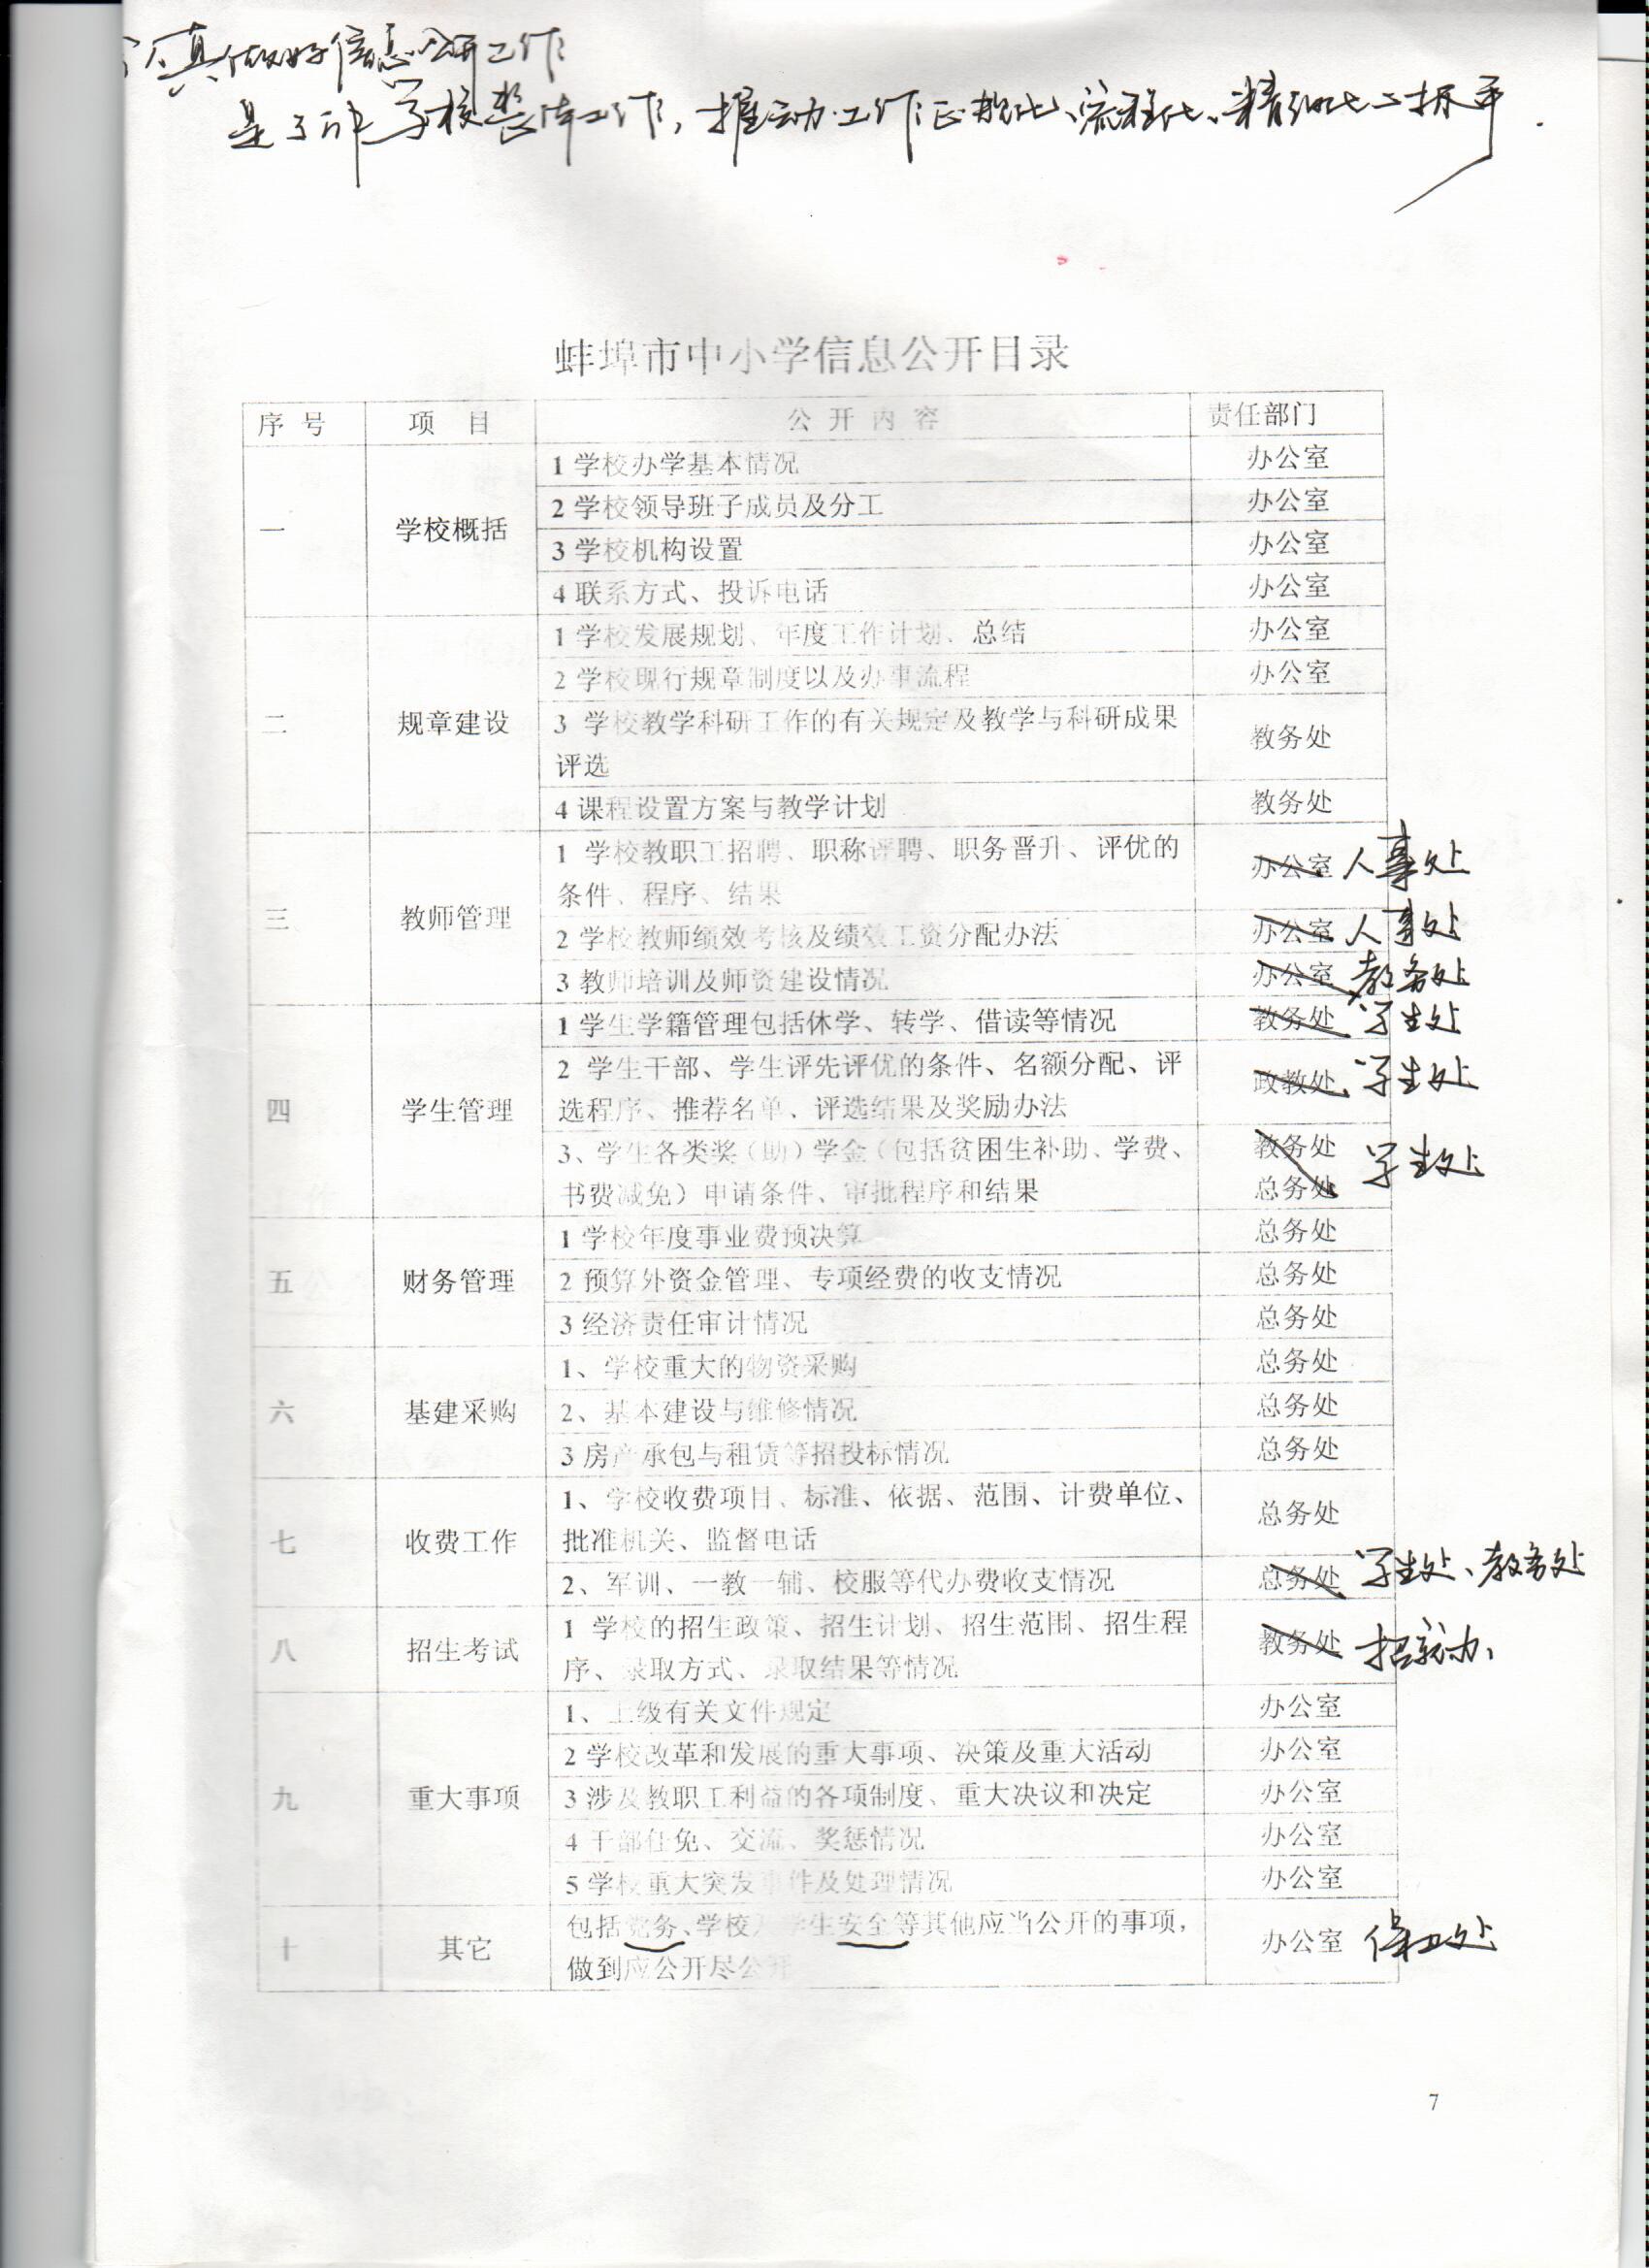 蚌埠市中小学信息公开目录.jpg